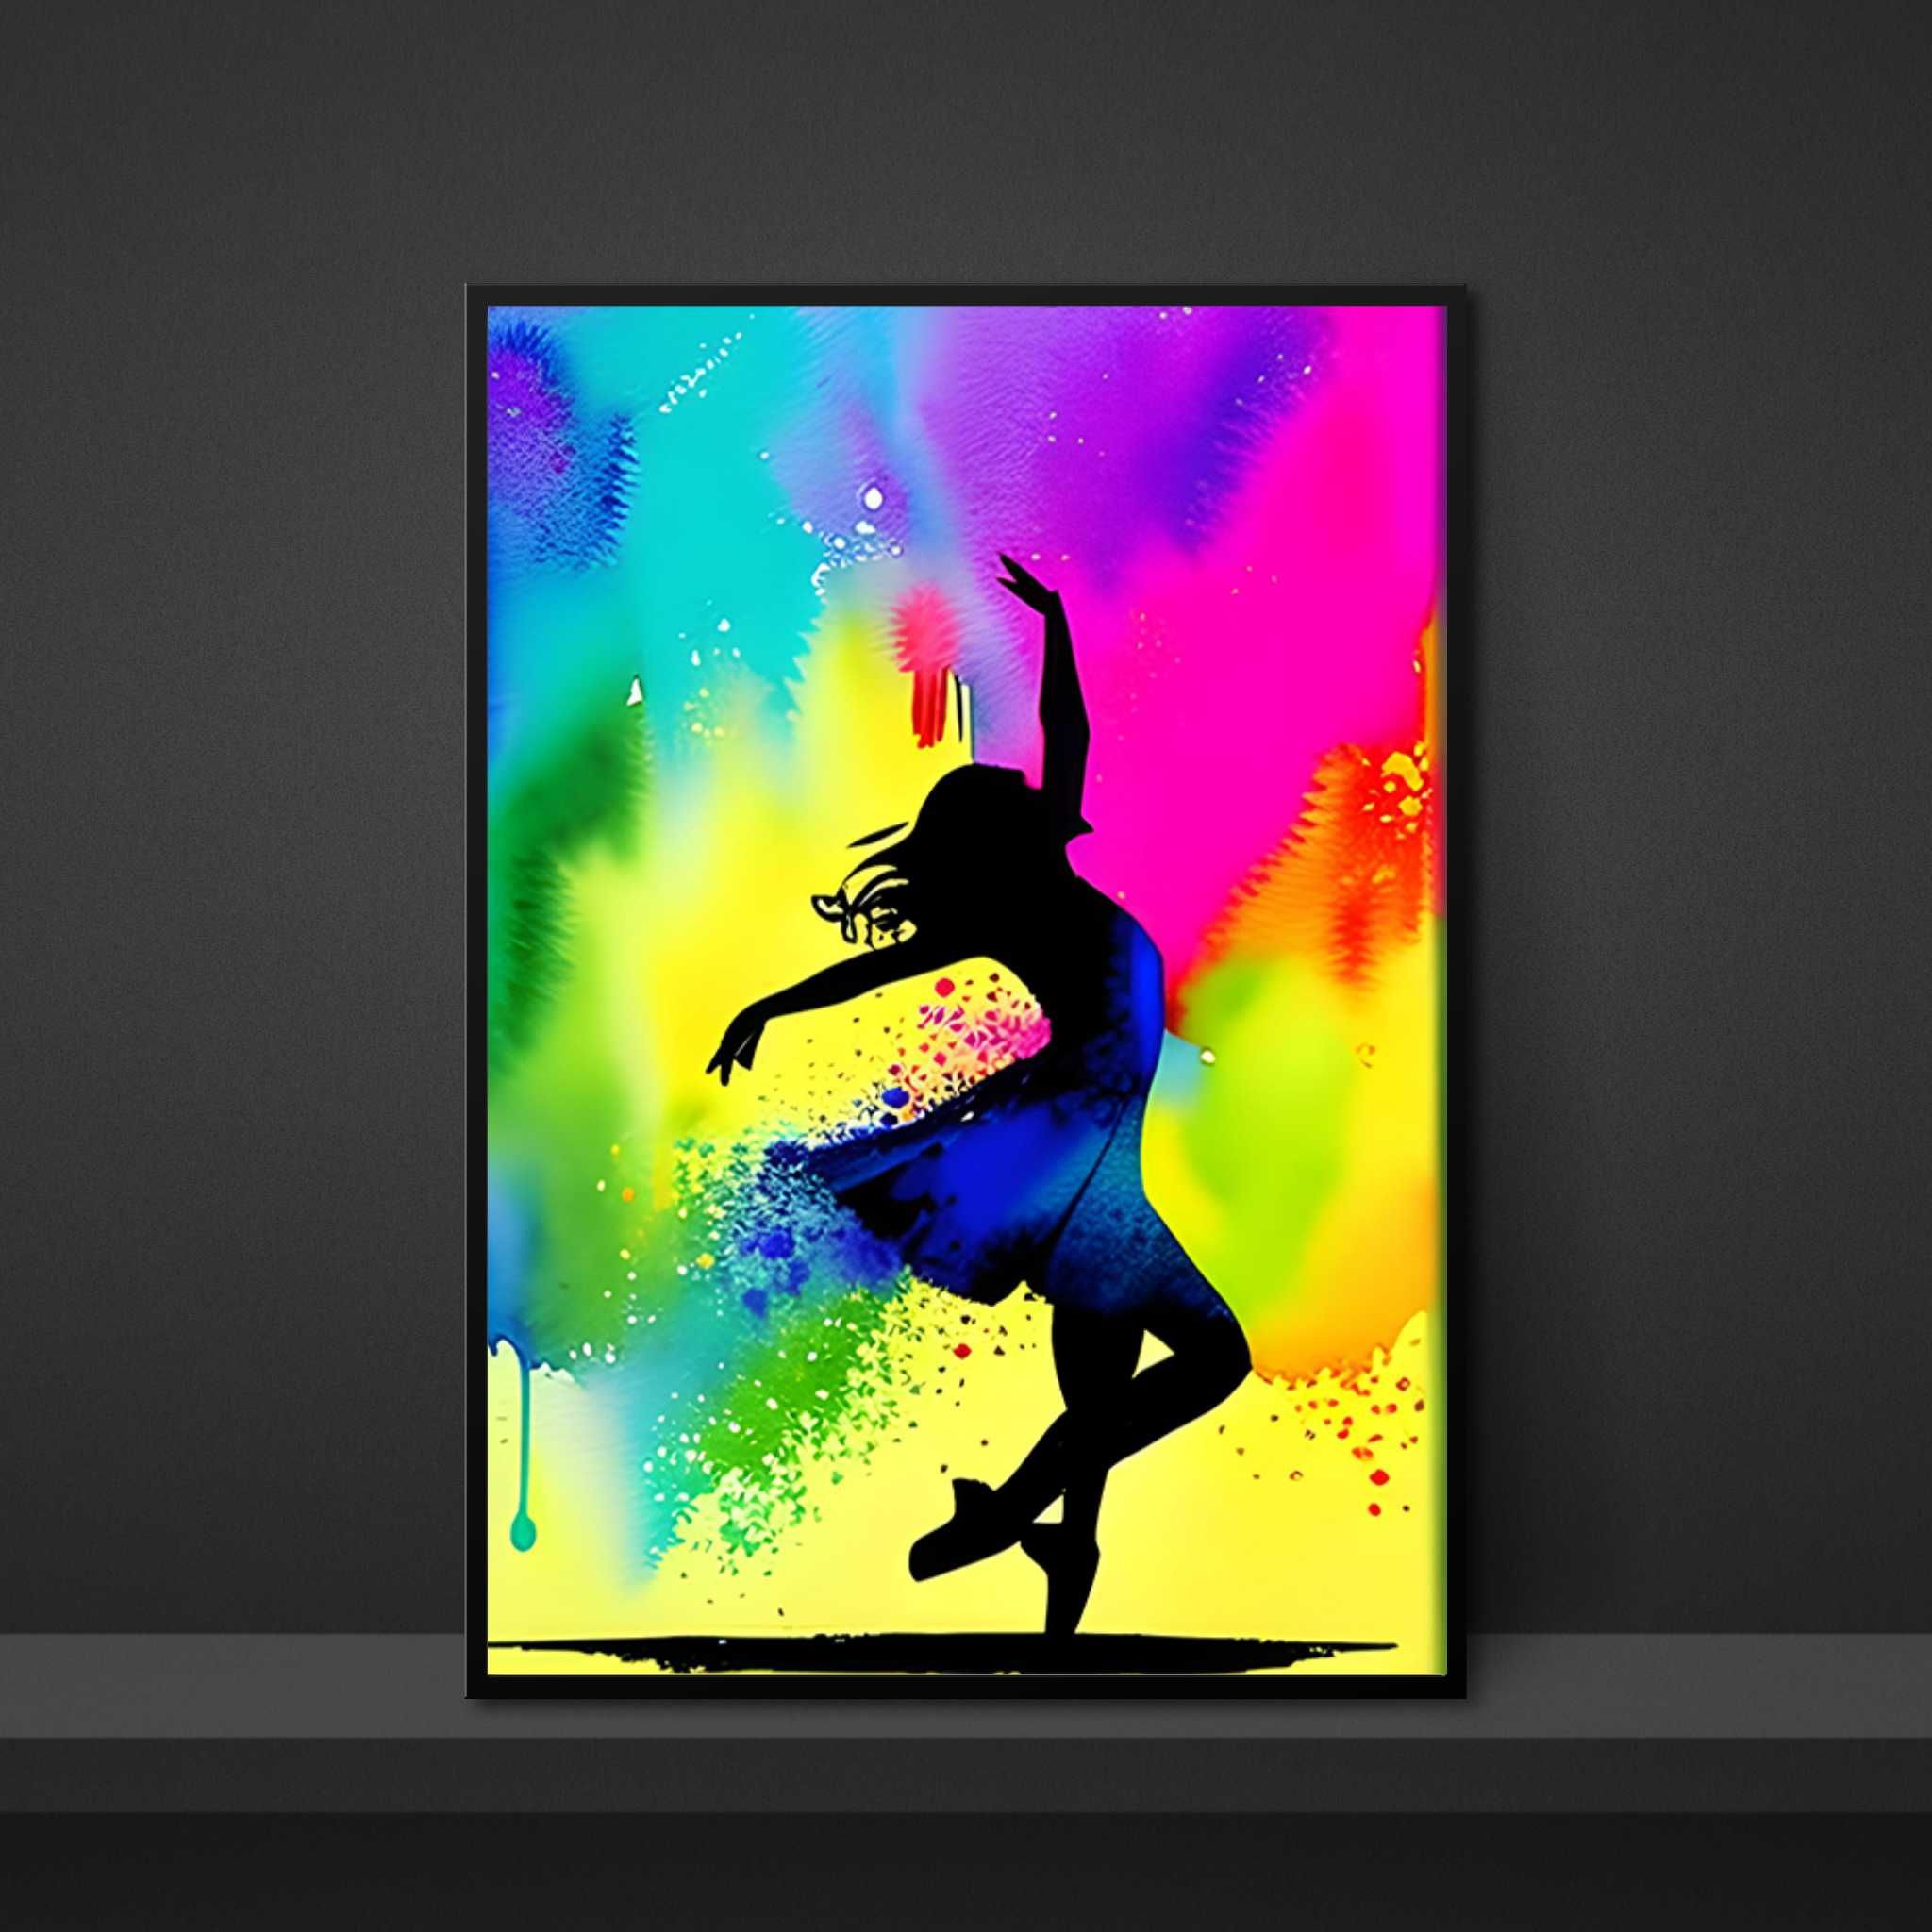 Plakat Premium Radość Tańca do salonu/ biura dla tancerzy - 50x70cm